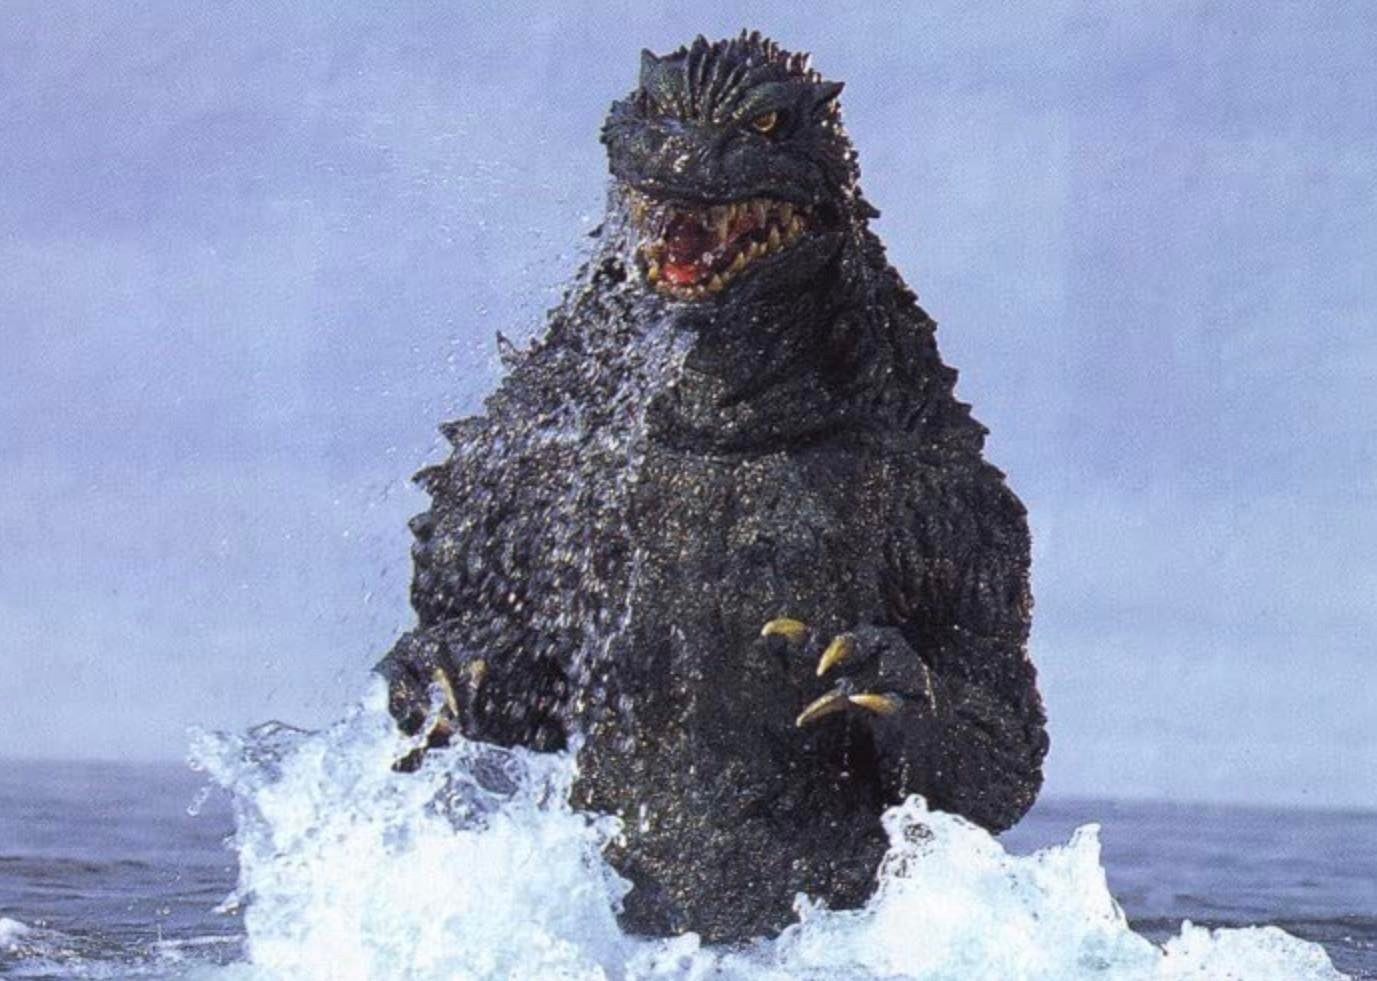 Godzilla 2000: The Millennium still